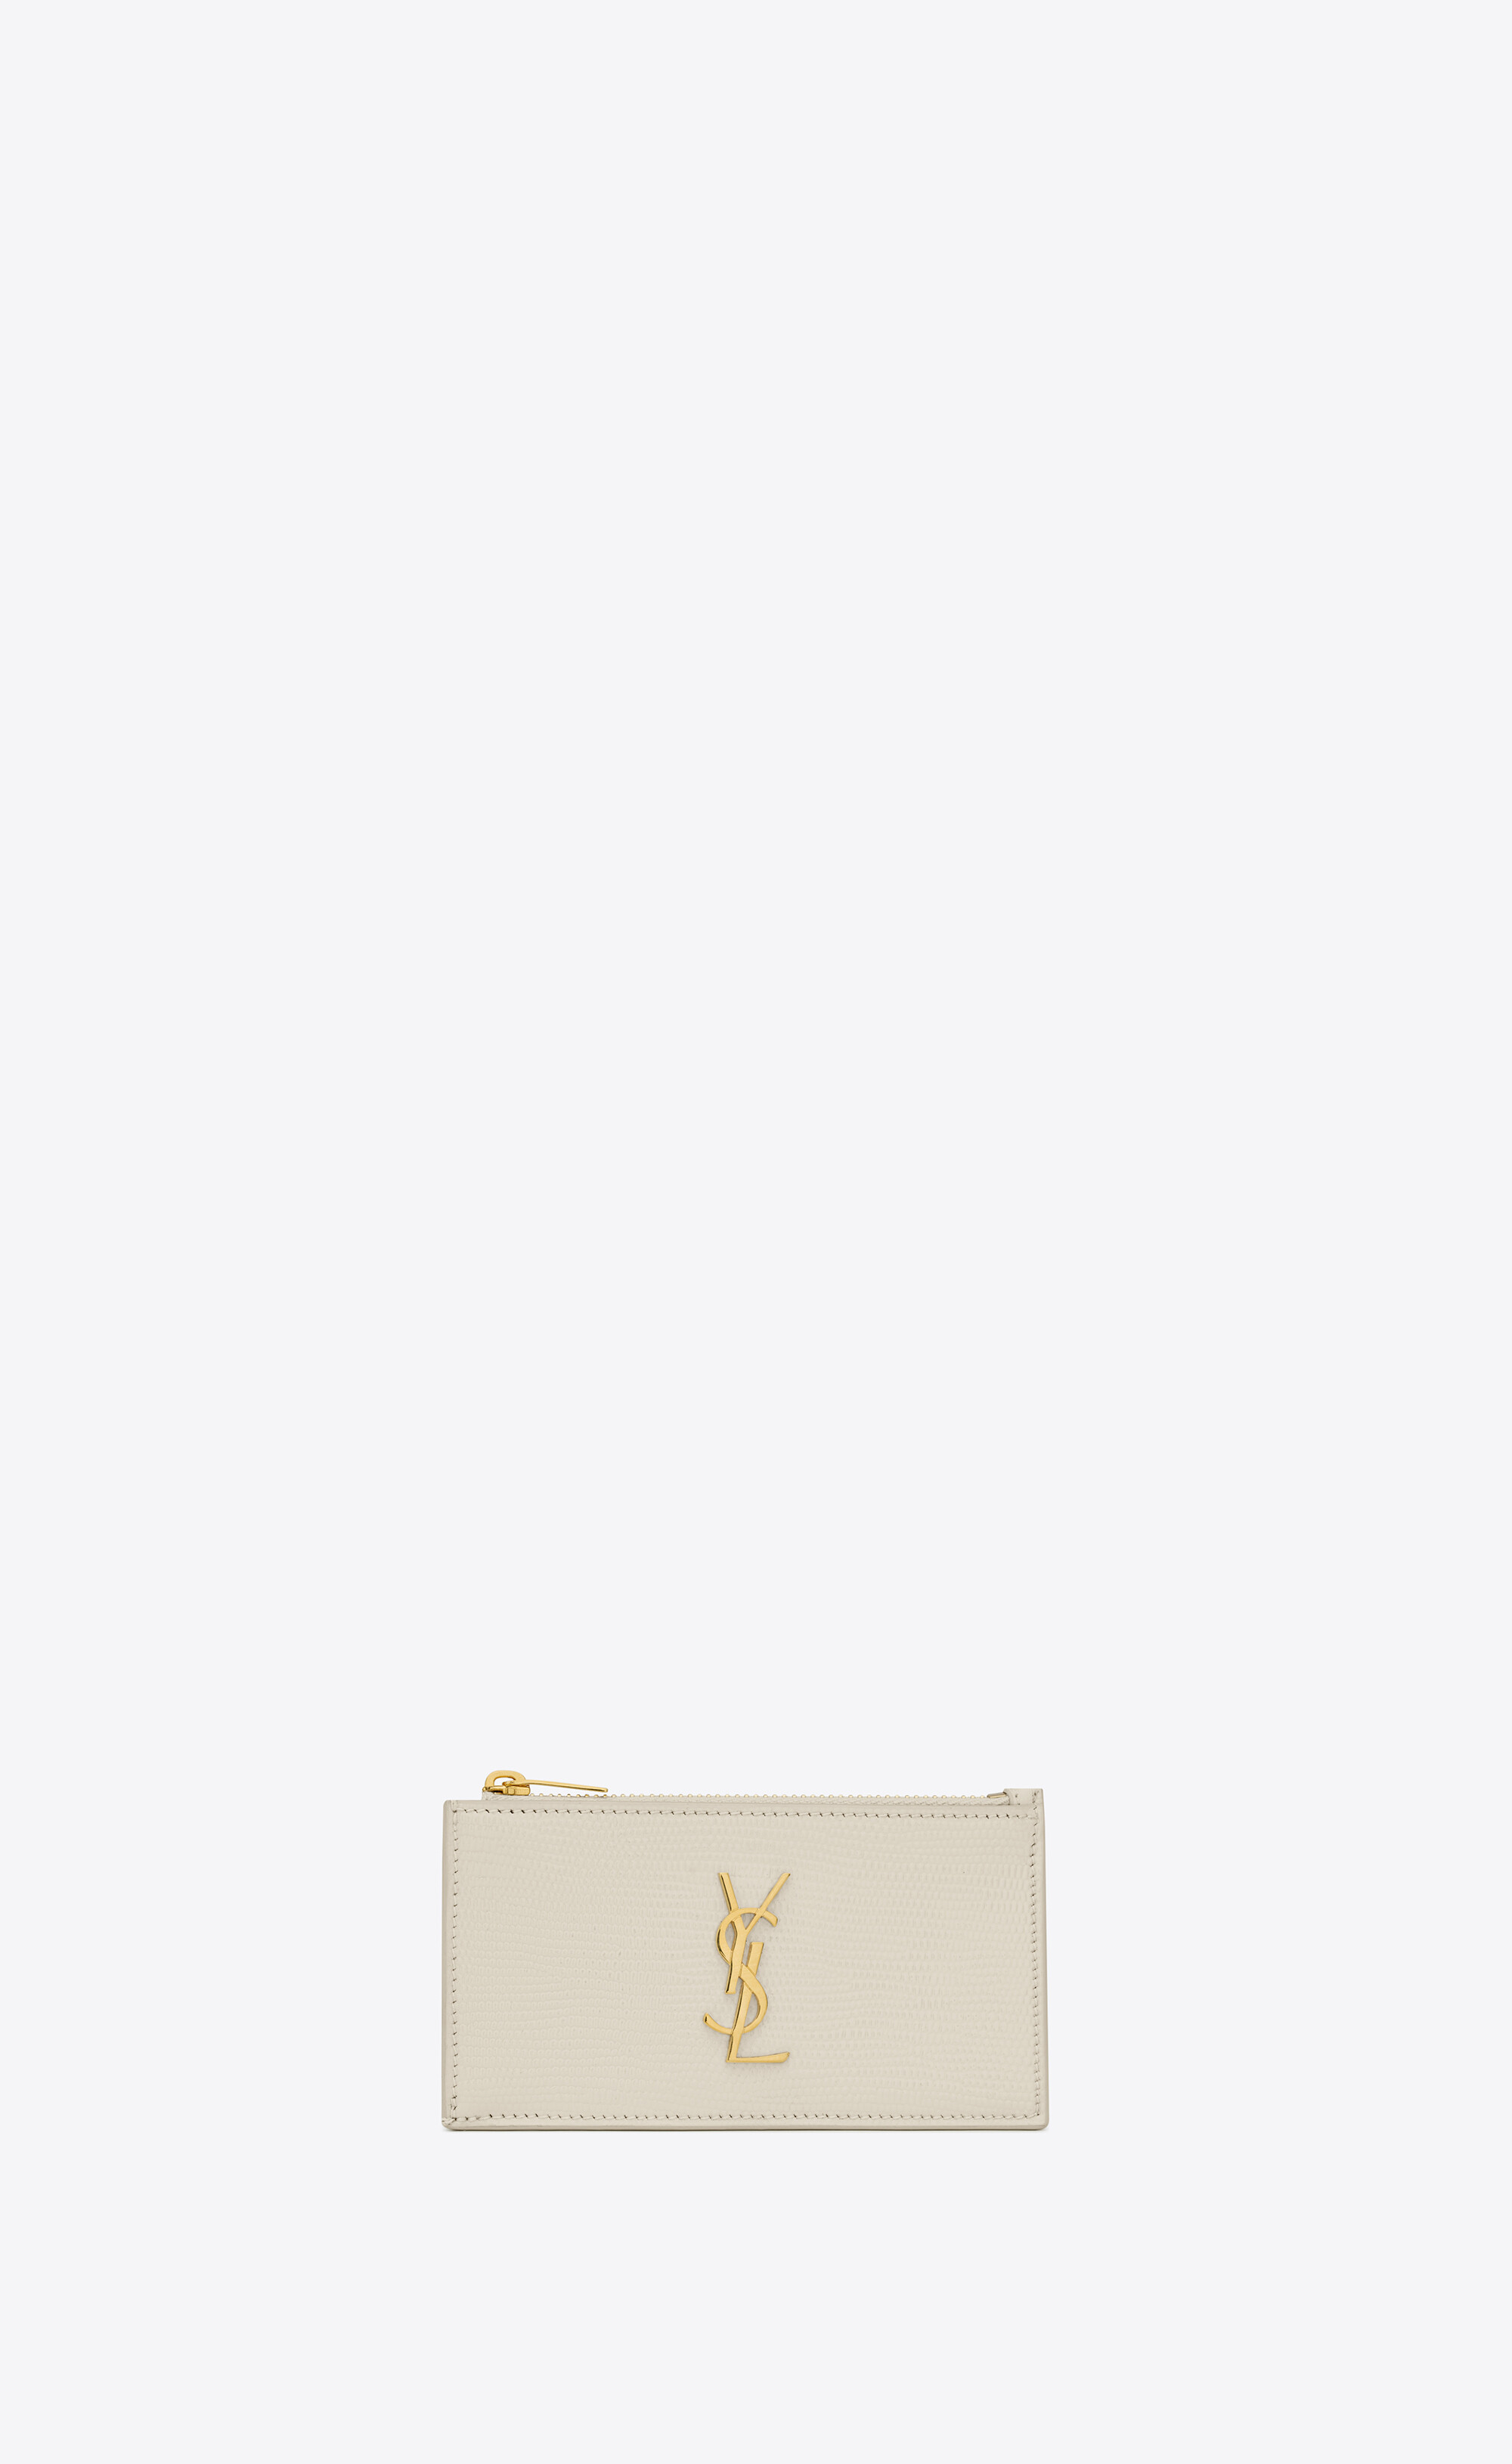 リザードエンボスレザー製 カサンドラ サンローランフラグメント ファスナー式カードケース